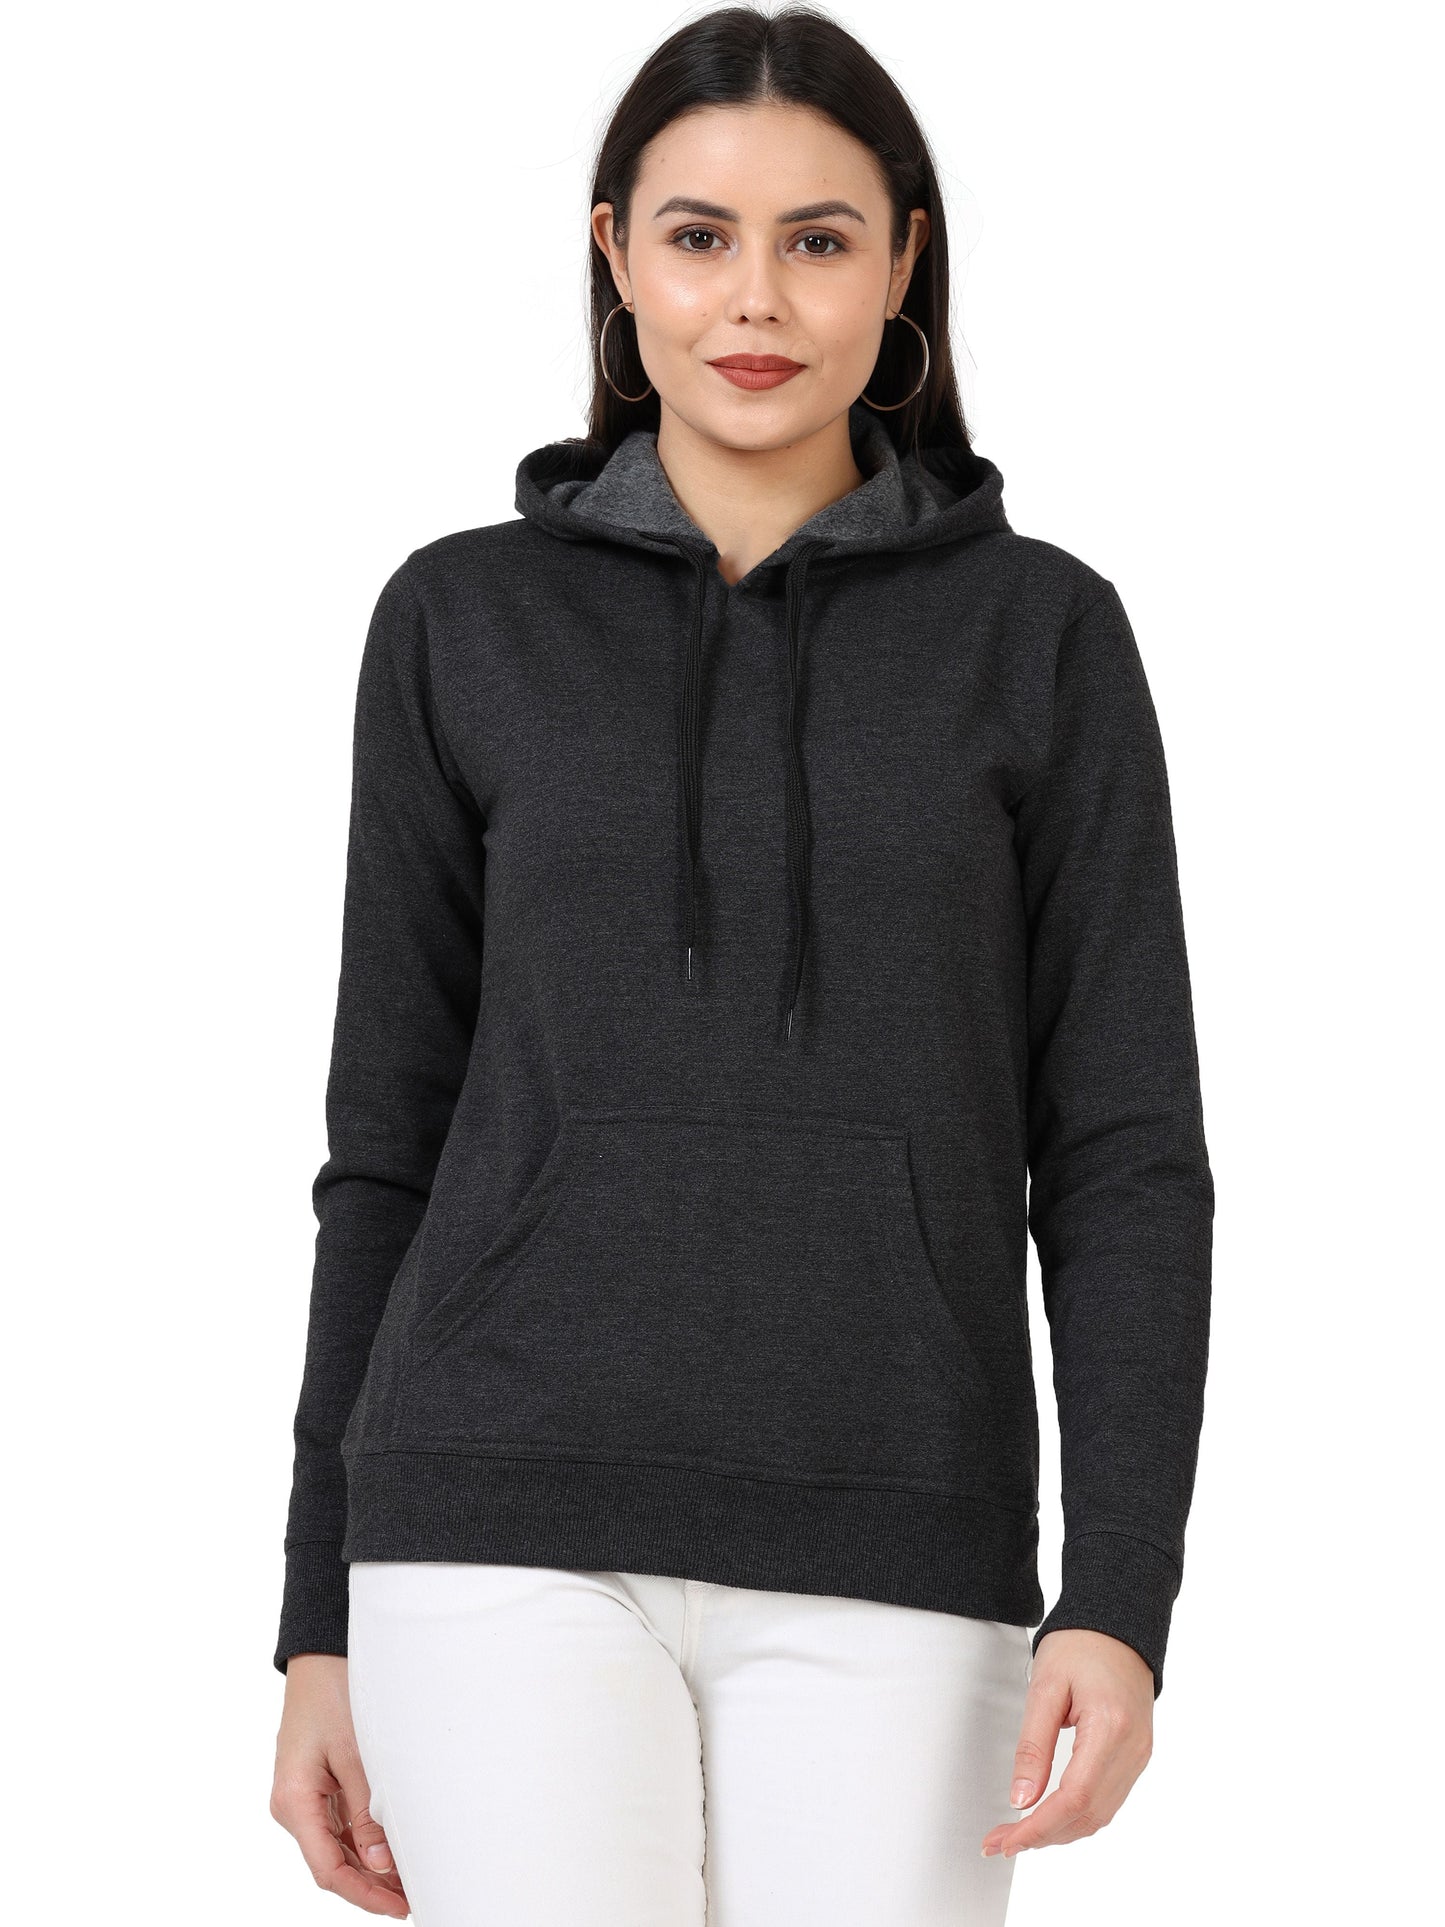 Women's Cotton Plain Charcoal Melange Color Sweatshirt Hoodies